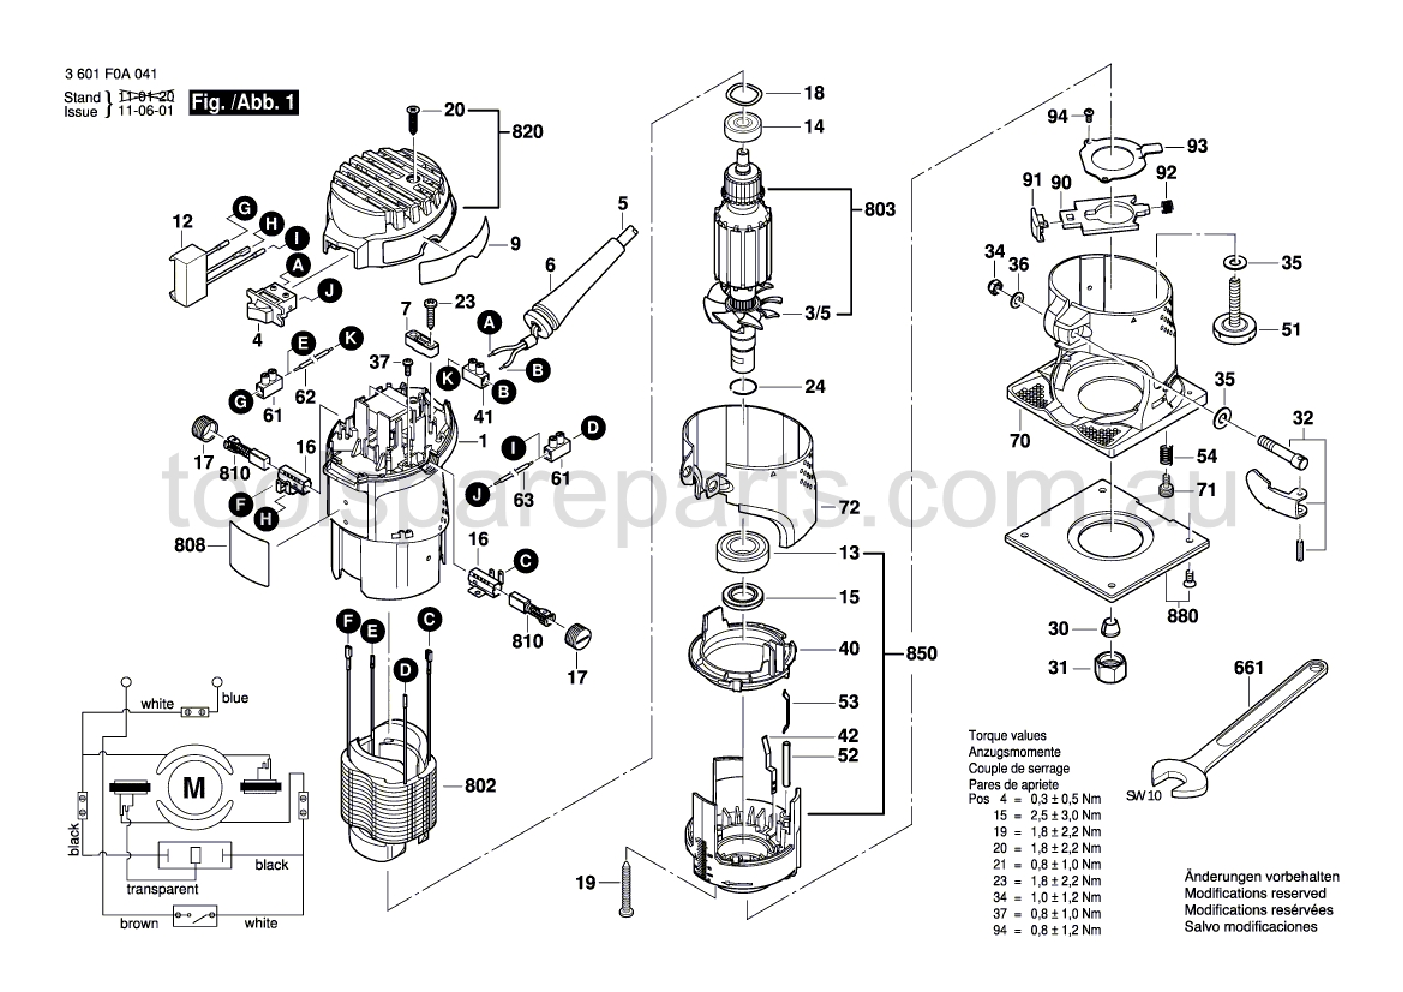 Bosch GMR 1 3601F0A041  Diagram 1